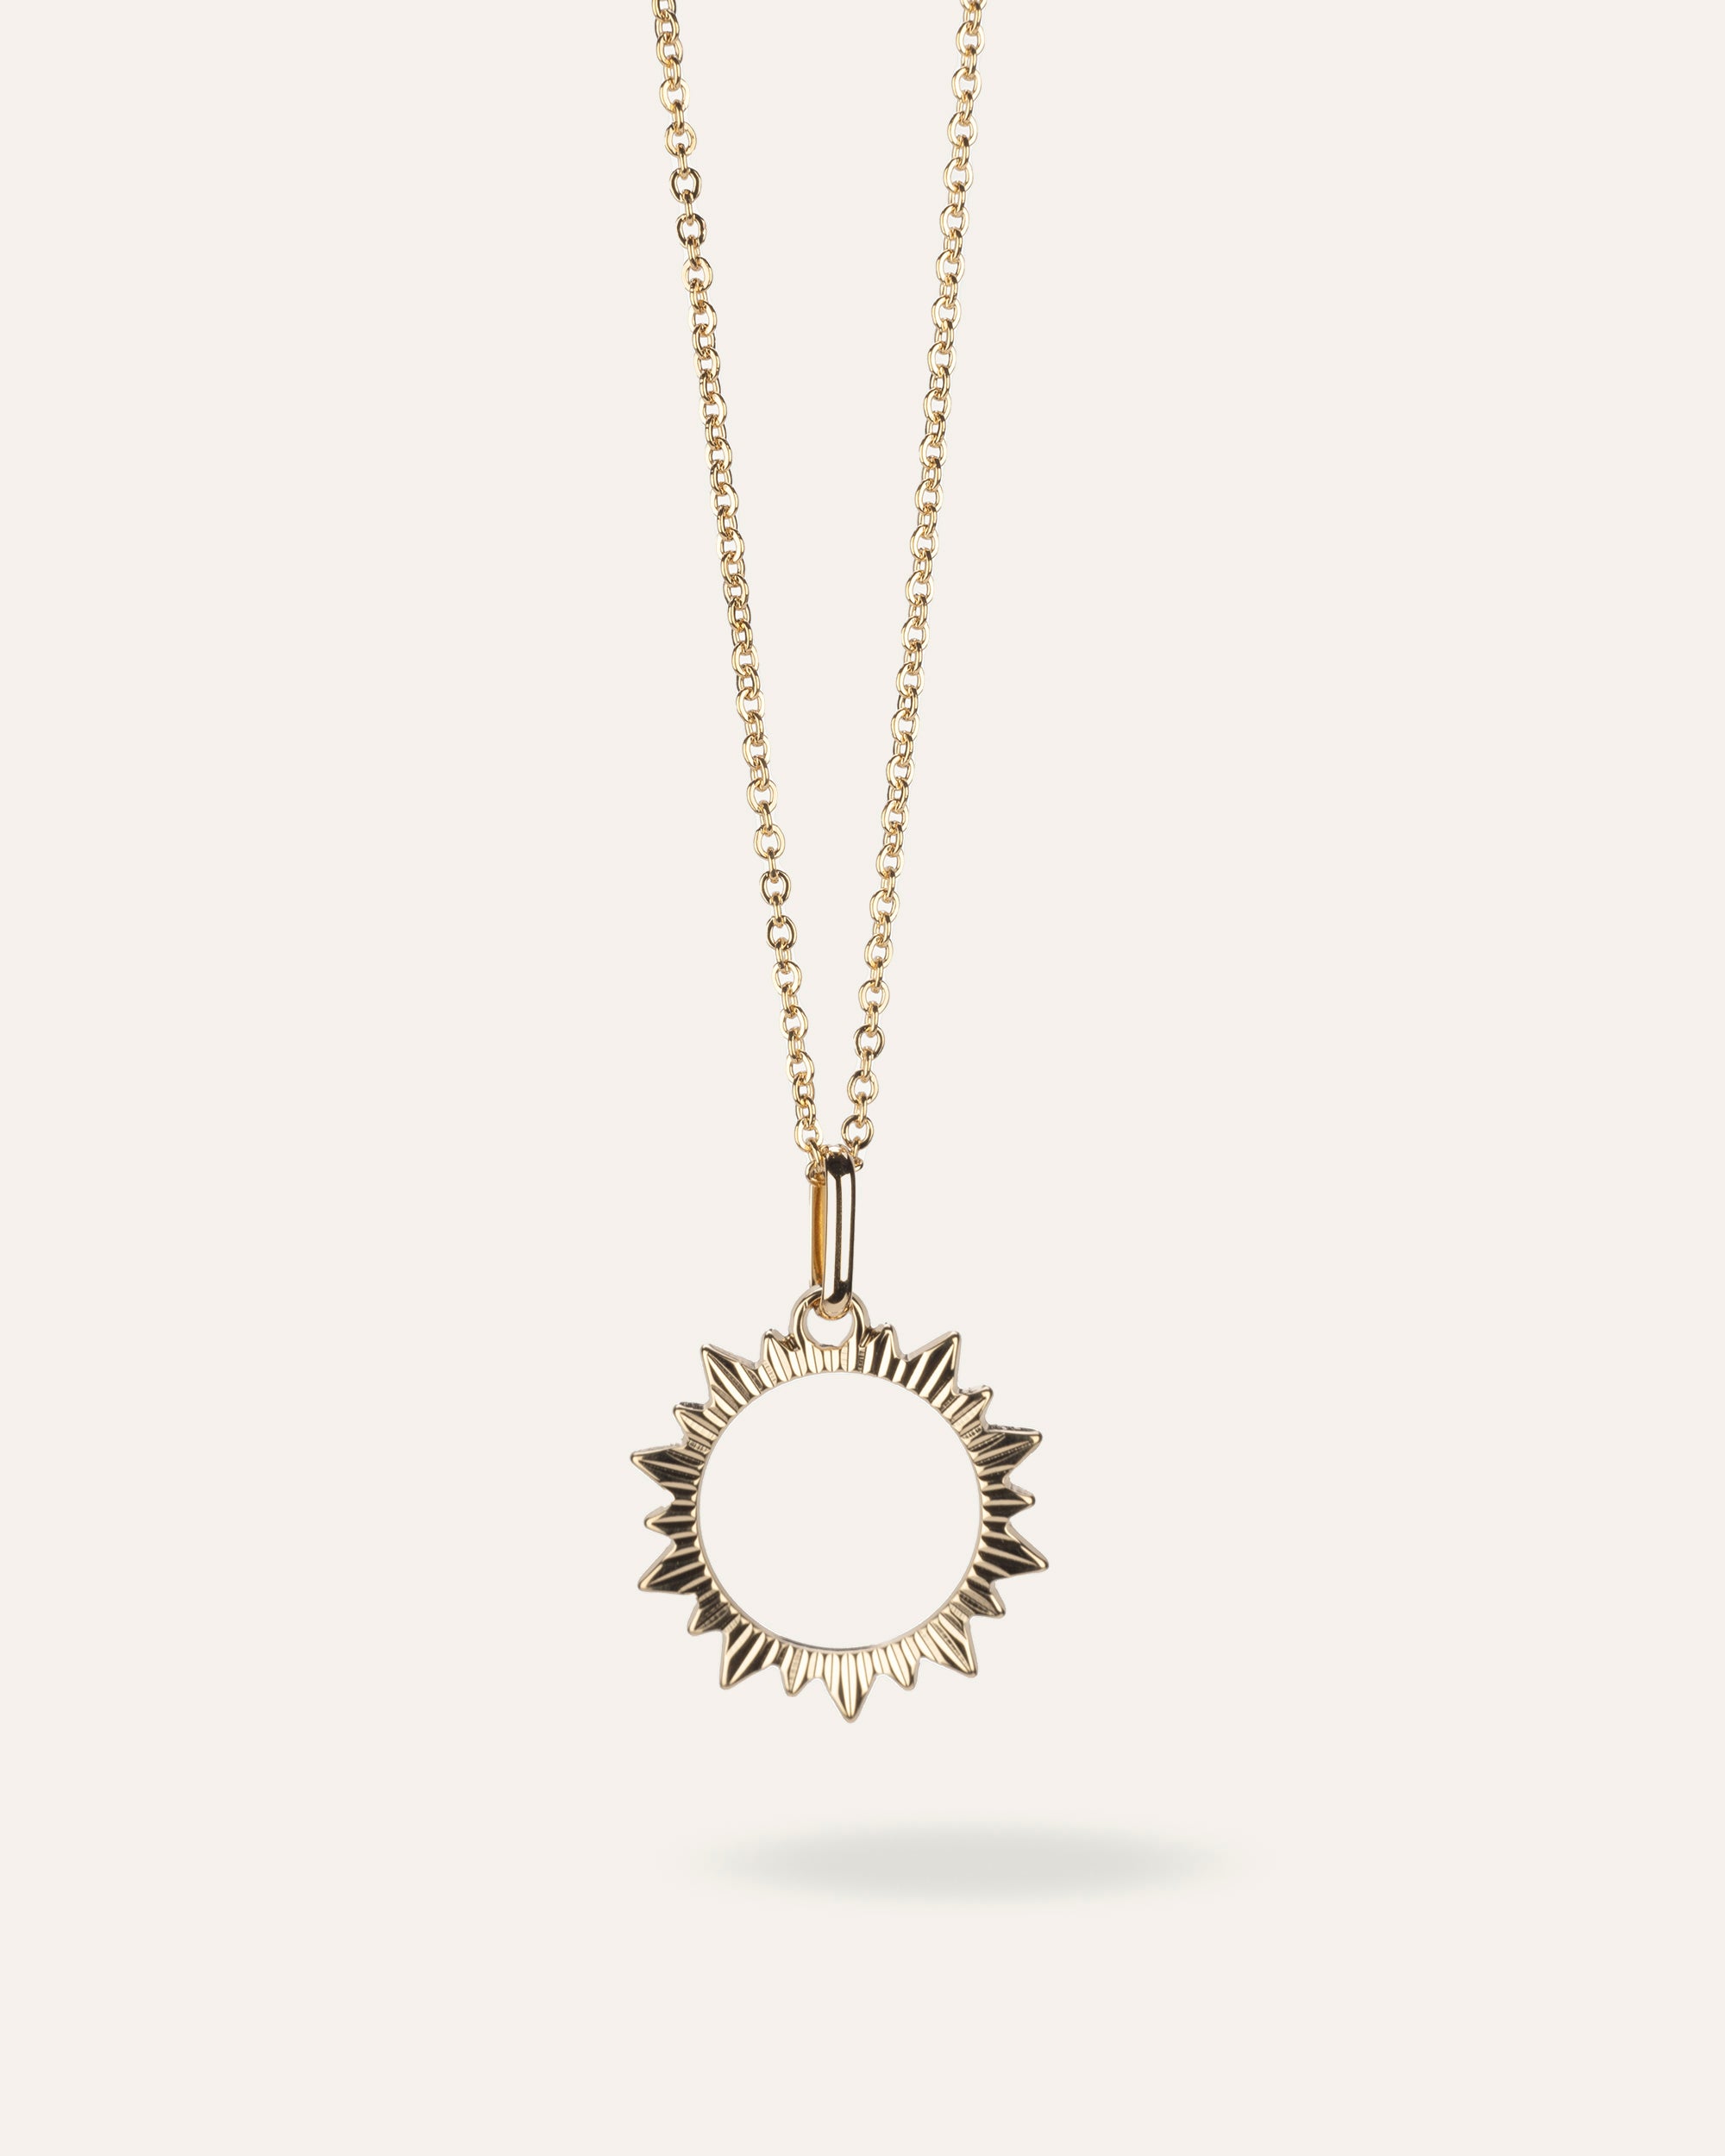 Collier fin en chaîne forçat avec un pendentif en soleil ajouré aux contours striés en plaqué or 3 microns made in France.